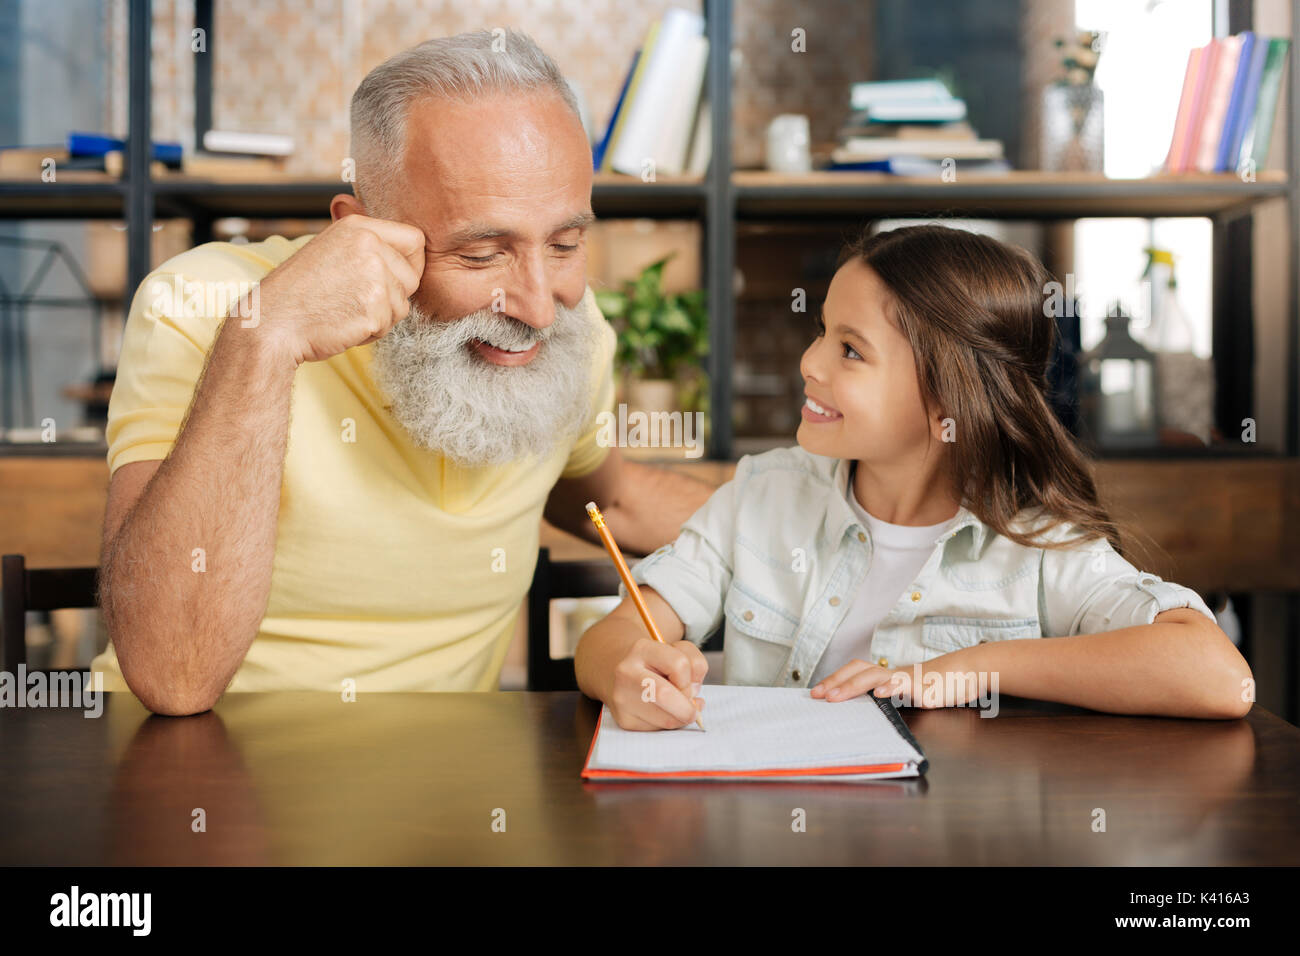 Разговор деда и внучки